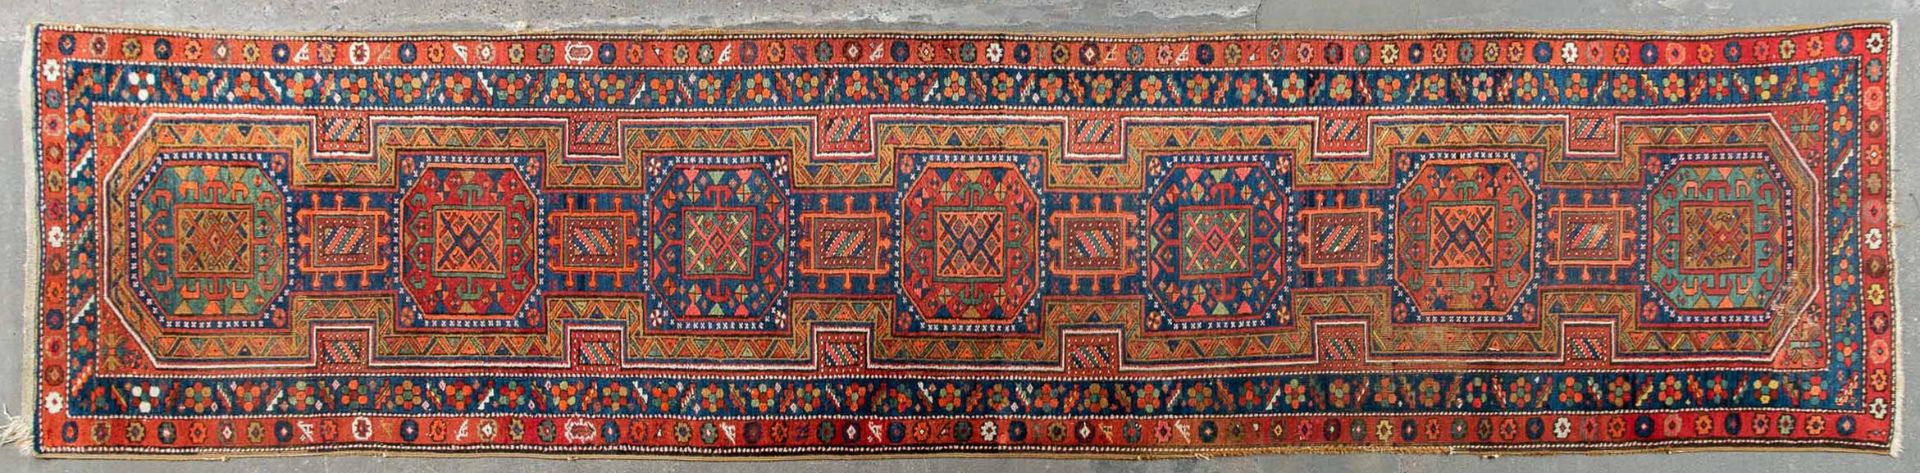 Ältere kaukasische Teppichgalerie, ca. 102 x 434 cm. Geometrische Motivik, wohl 2. Drittel 20. Jhdt